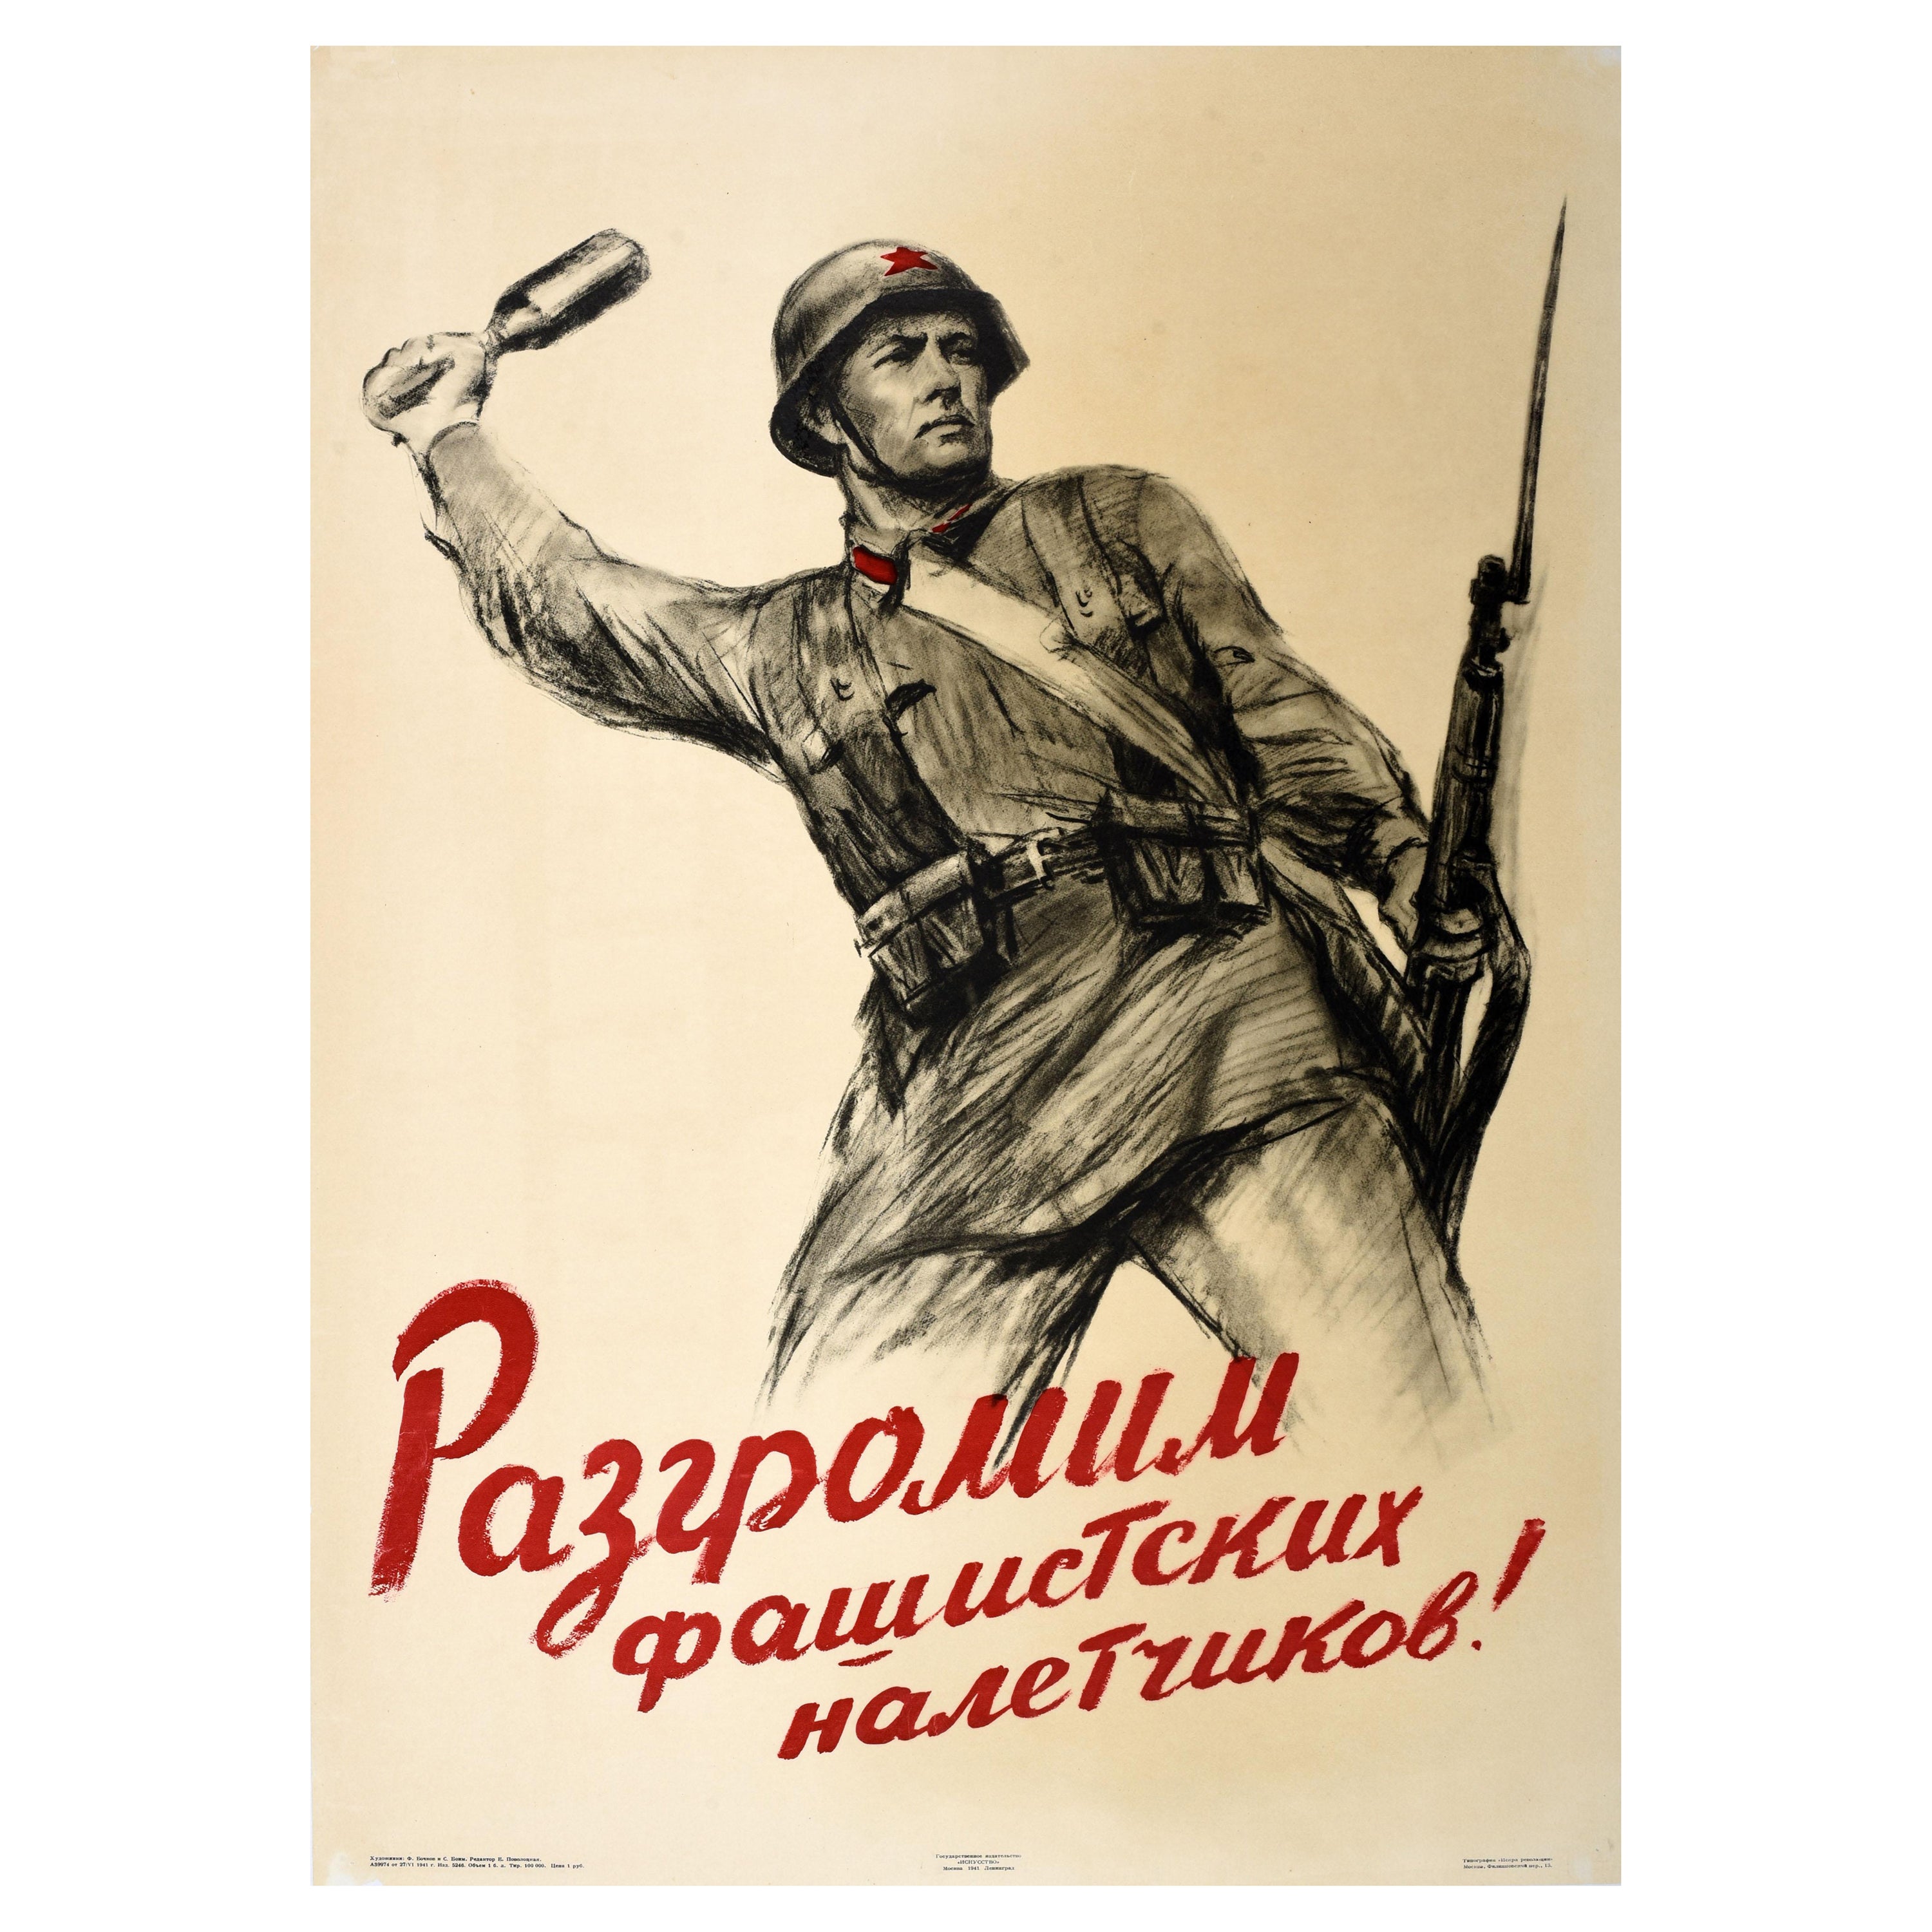 Seltene Original Vintage WWII Propaganda Poster Niederlage faschistische Angreifer UdSSR Armee im Angebot